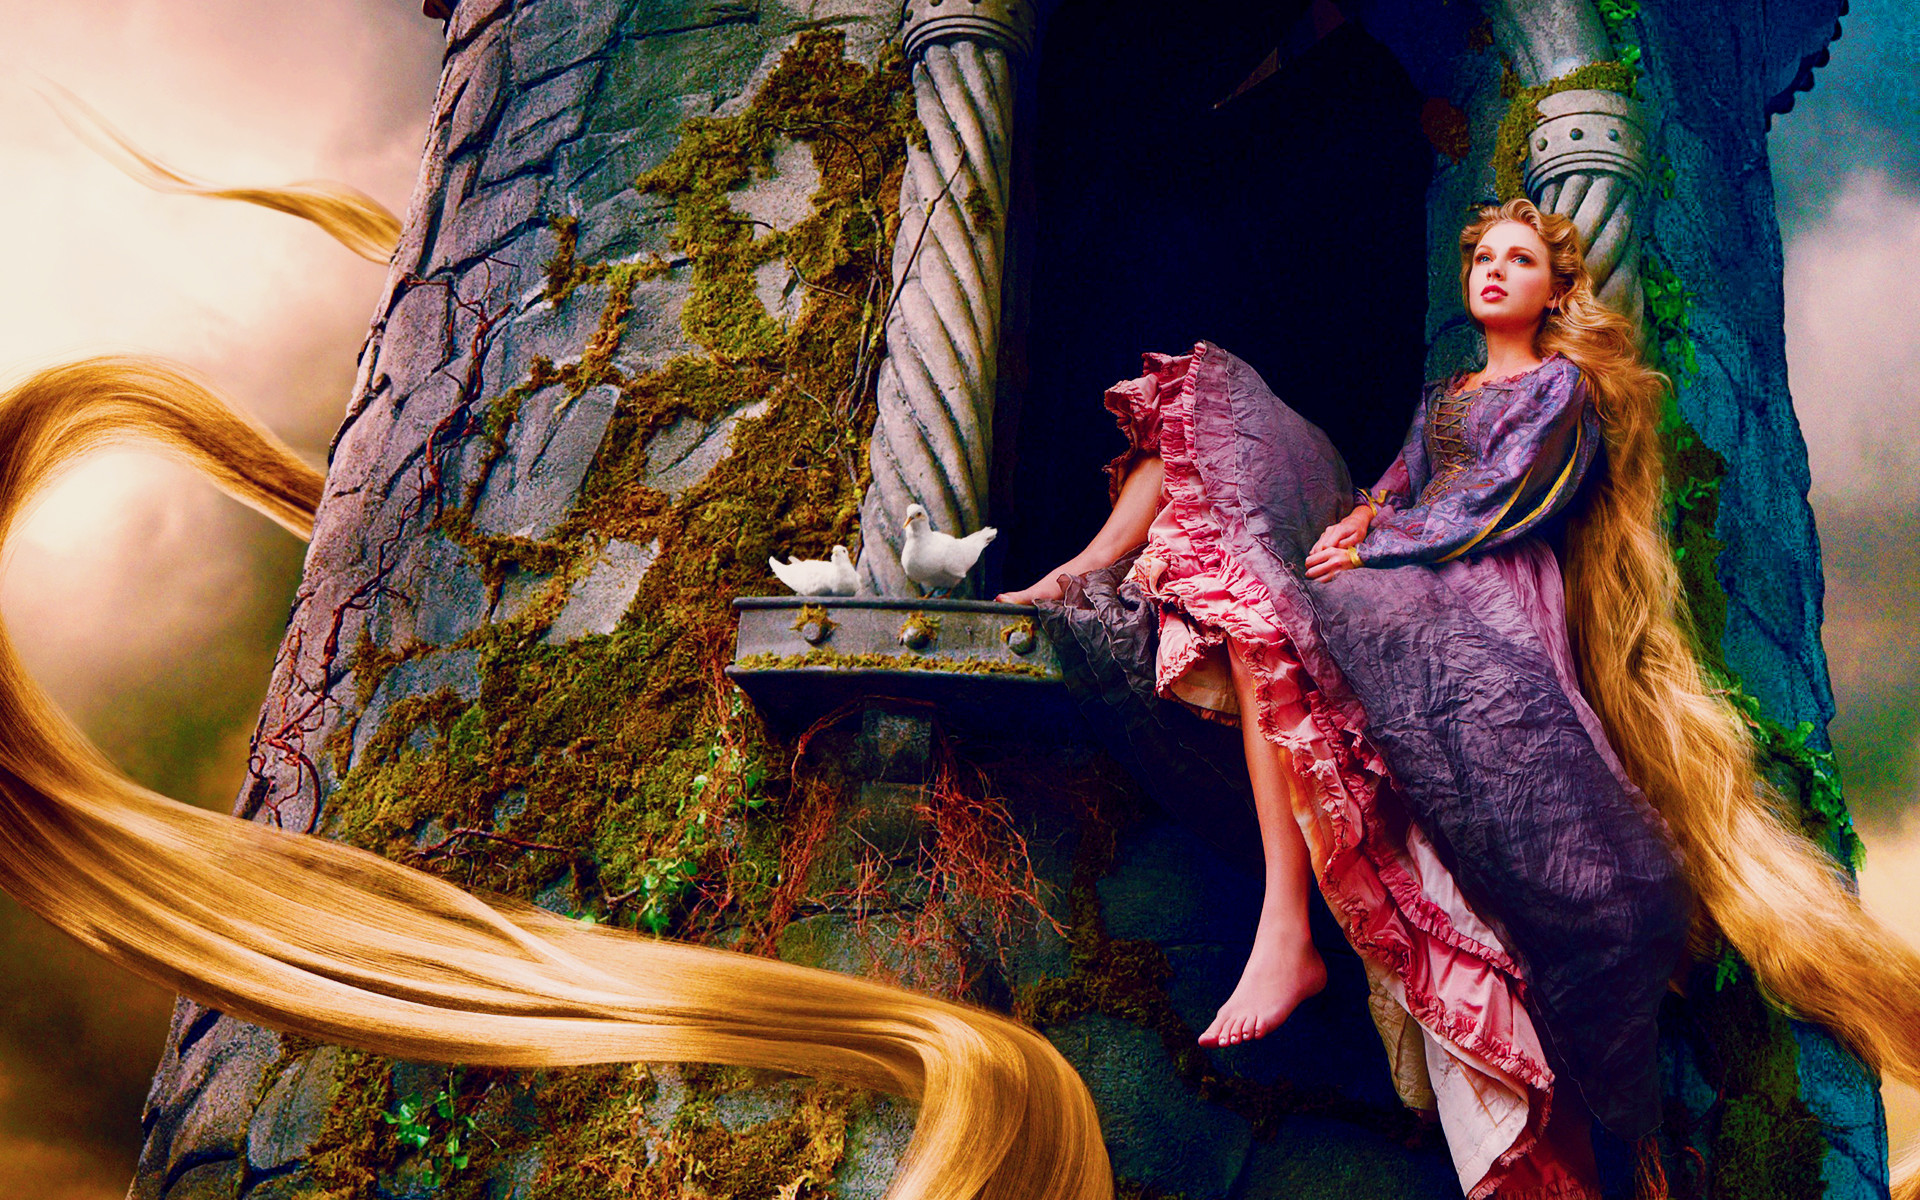 Taylor Swift as Rapunzel